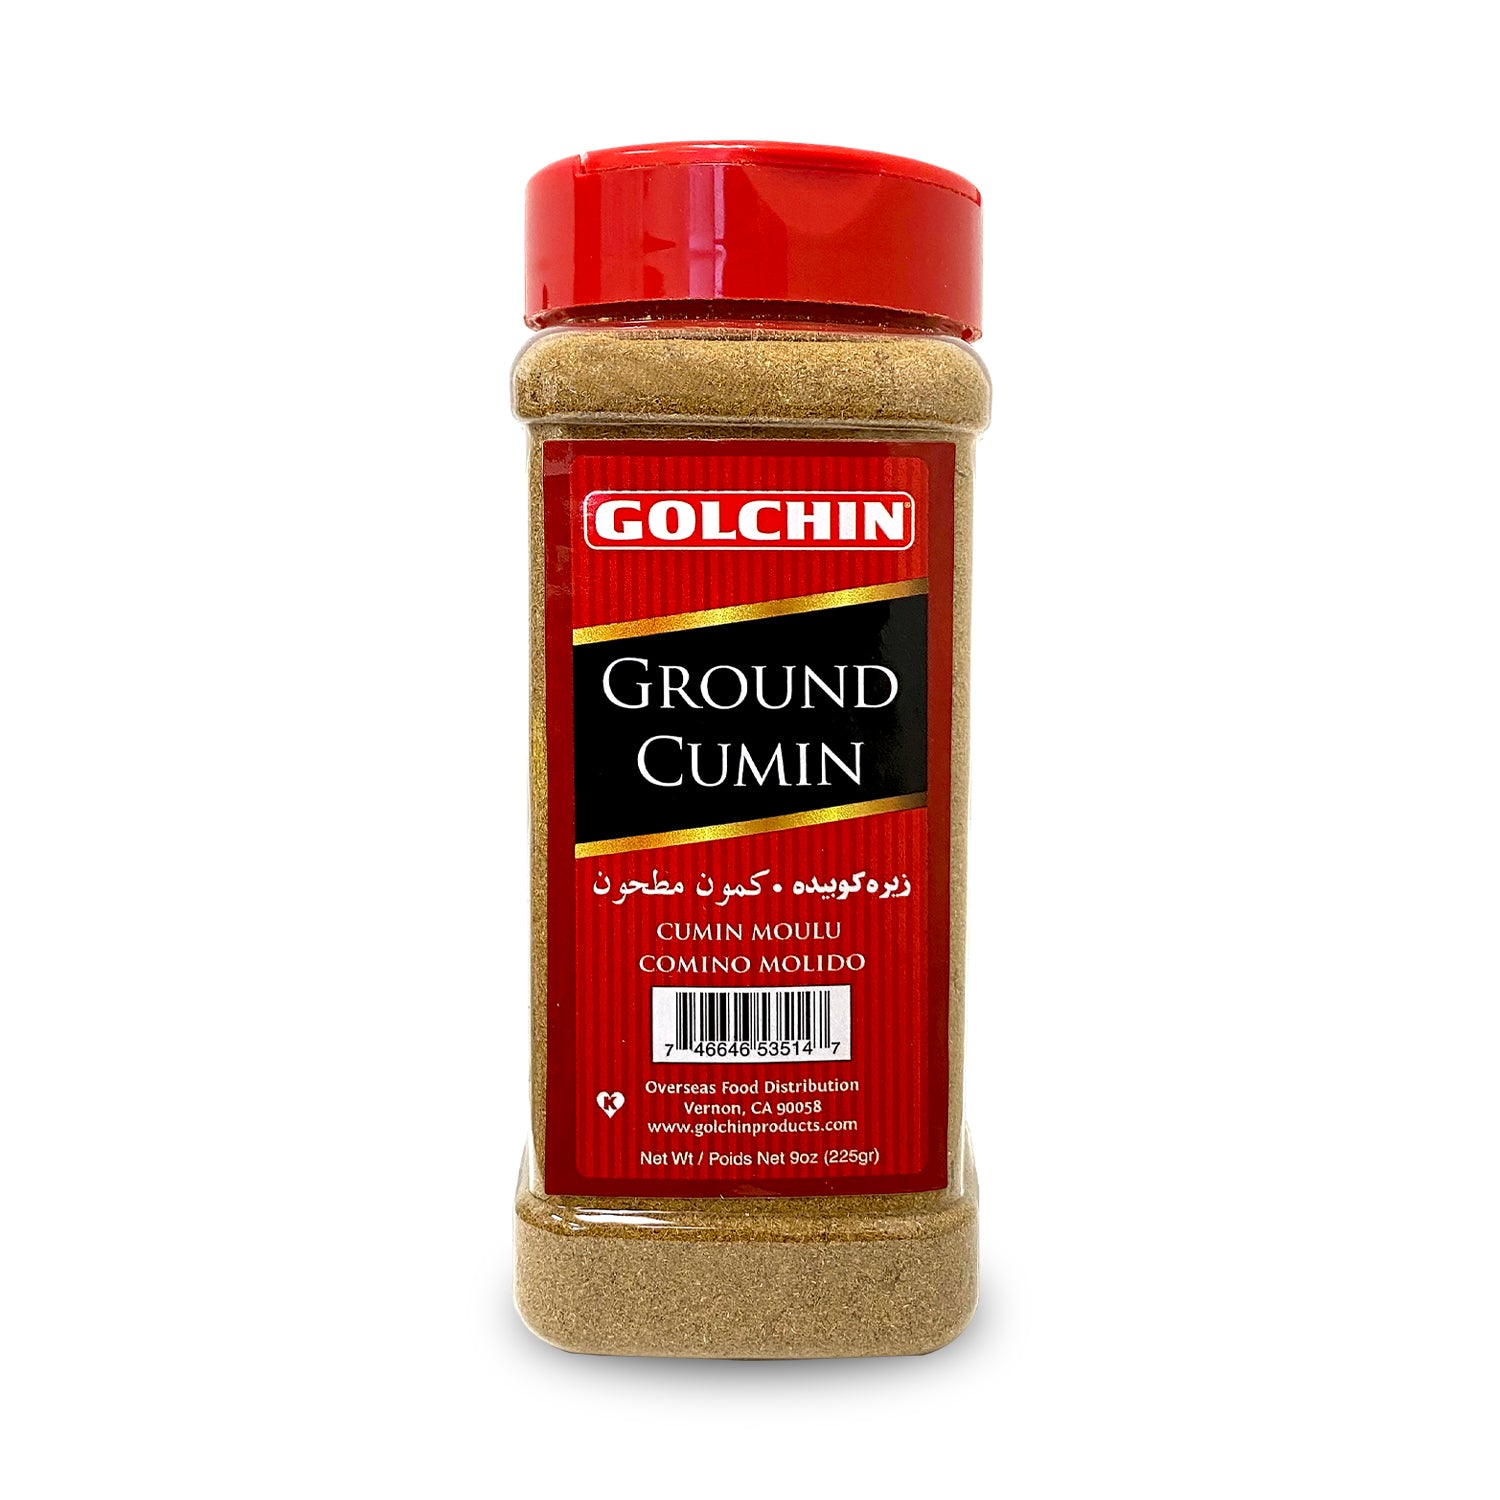 GOLCHIN GROUND CUMIN LARGE (IN JAR)